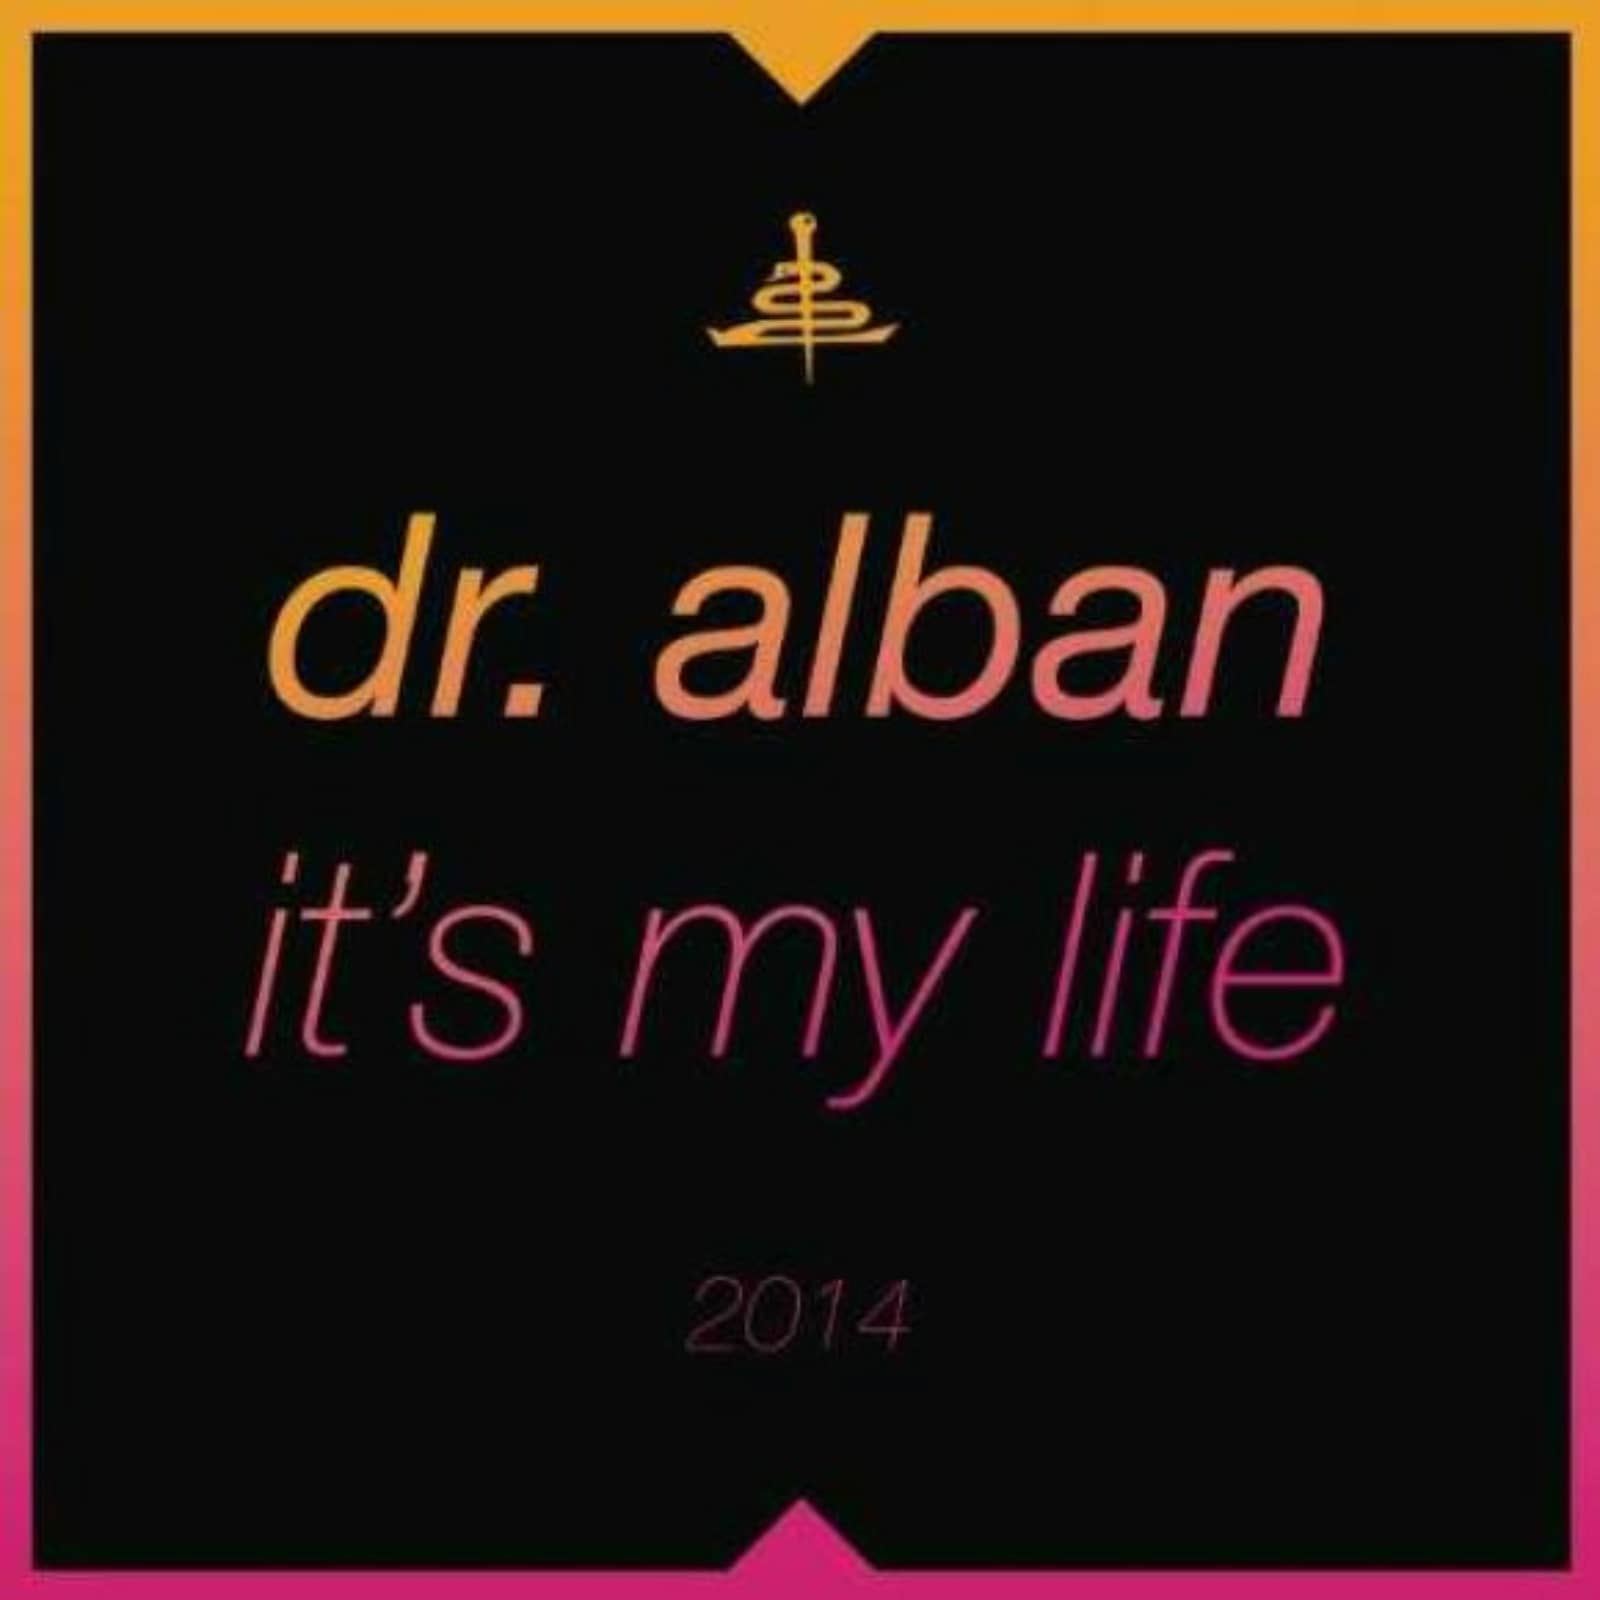 Албан итс май лайф слушать. Доктор албан ИТС май Life. Dr Alban - it´s my Life. Dr. Alban - its my Life 2014 (Bodybangers Remix). Dr. Alban - it's my Life обложка.